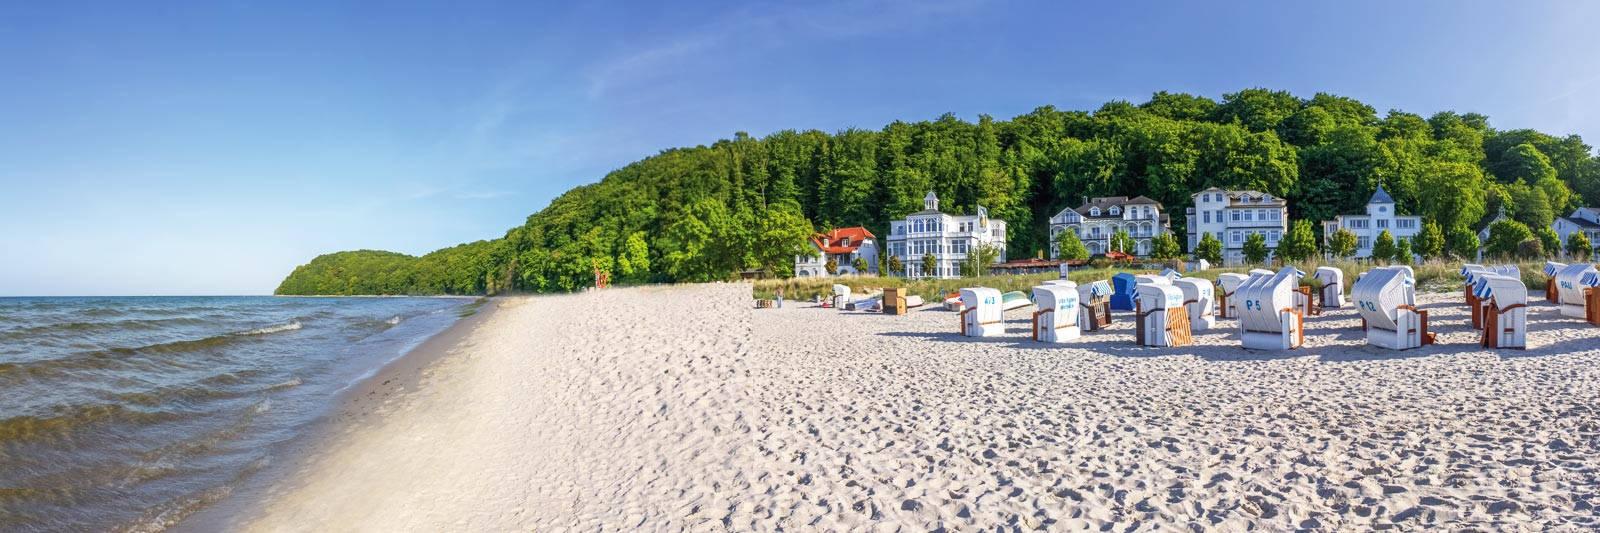 15 Ferienwohnungen und Ferienhäuser in Liessow - tourist-online.de